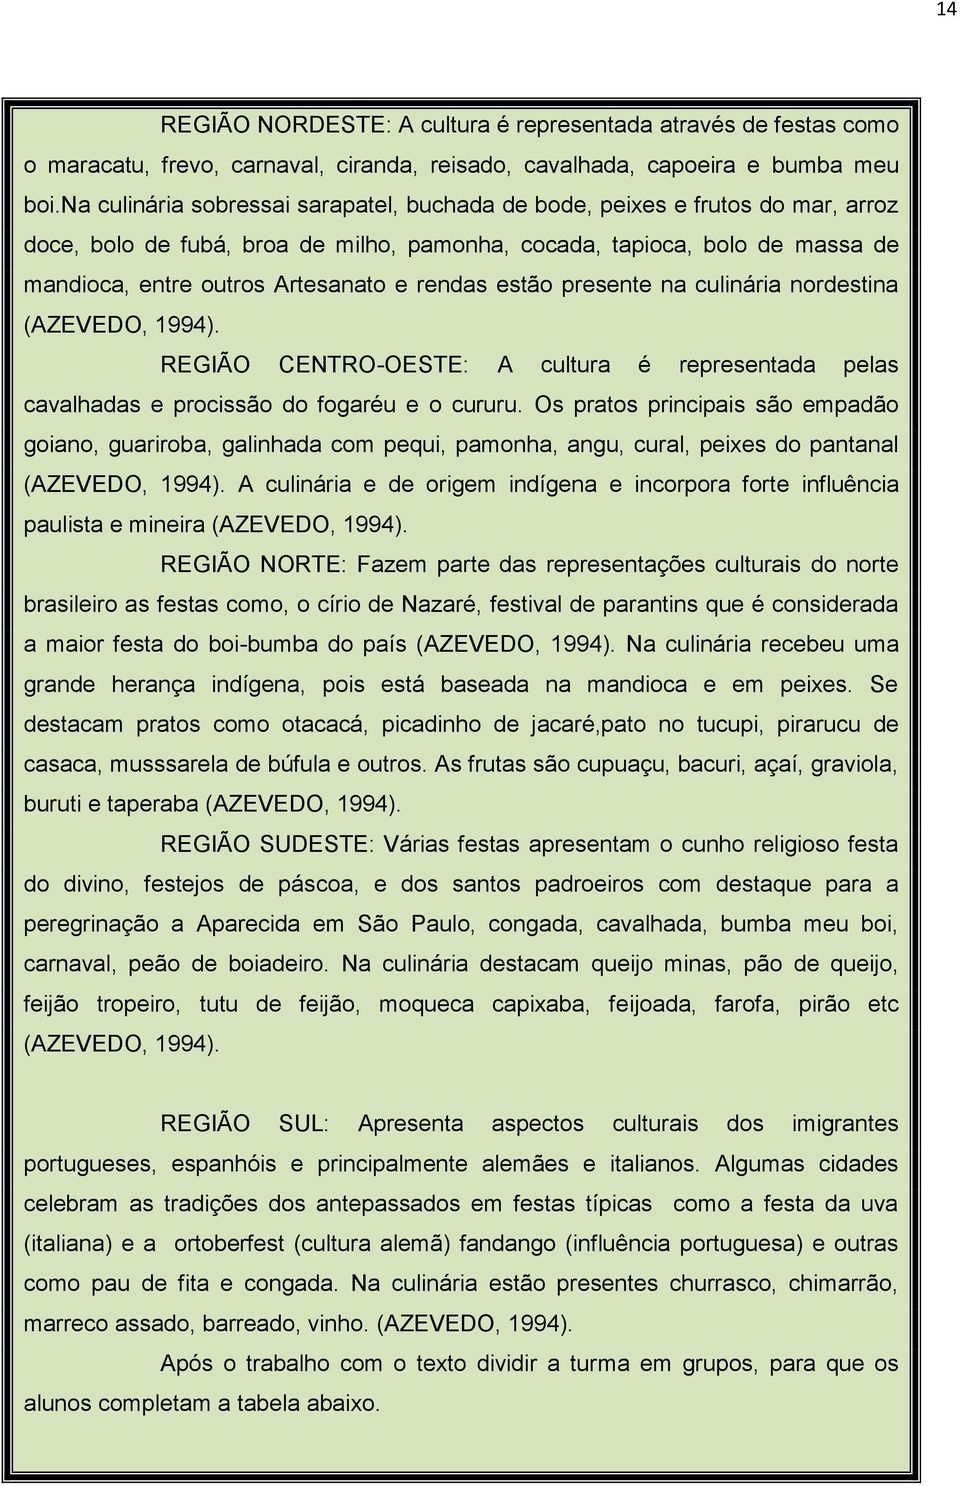 rendas estão presente na culinária nordestina (AZEVEDO, 1994). REGIÃO CENTRO-OESTE: A cultura é representada pelas cavalhadas e procissão do fogaréu e o cururu.